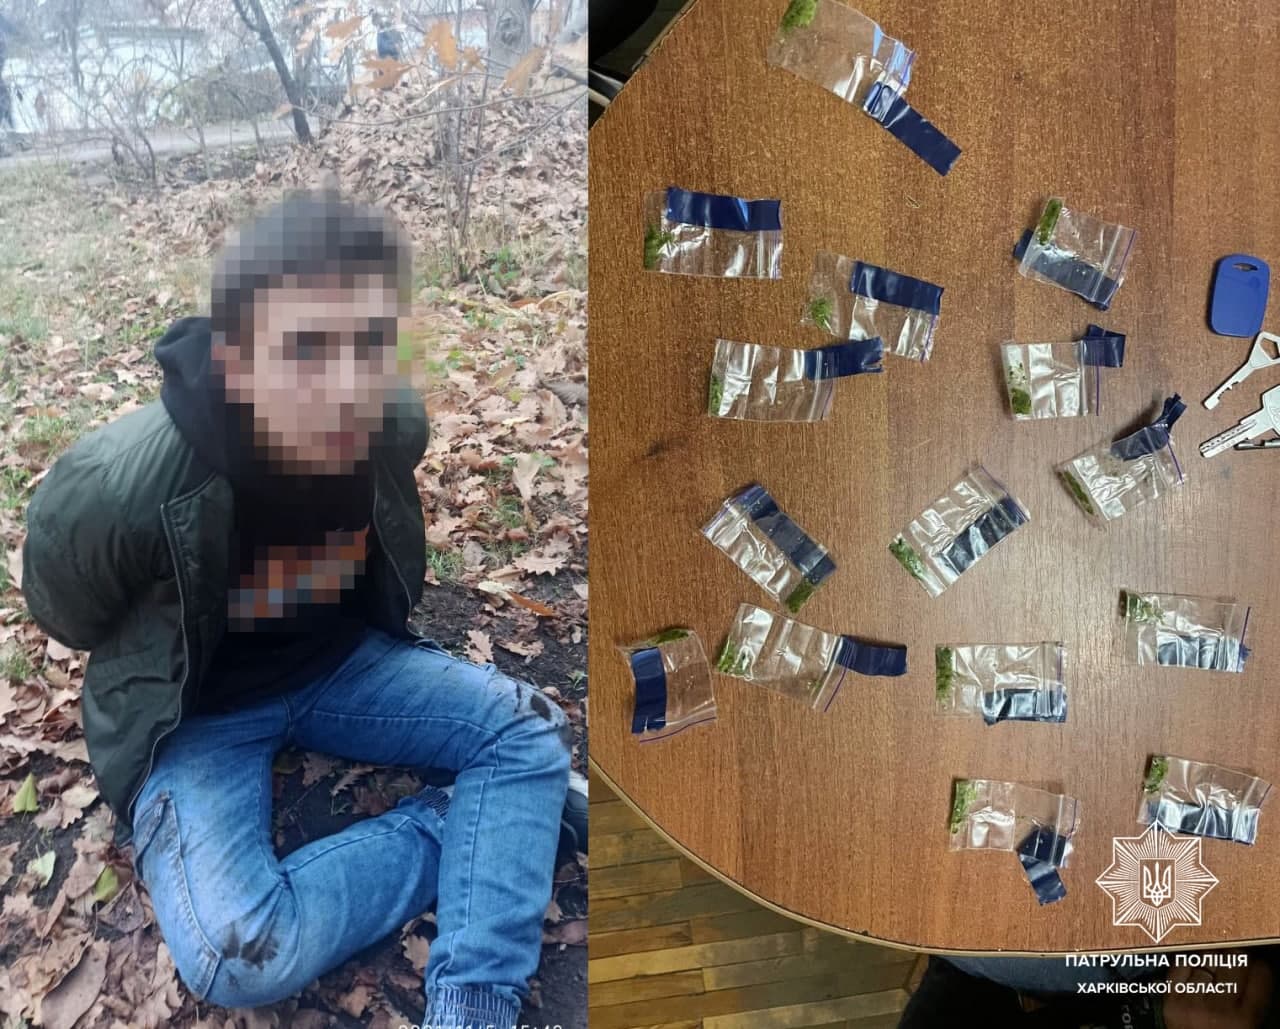 Криминал Харьков: Закладчик наркотиков распылил баллончик в полицейских, убегал и пытался дать взятку